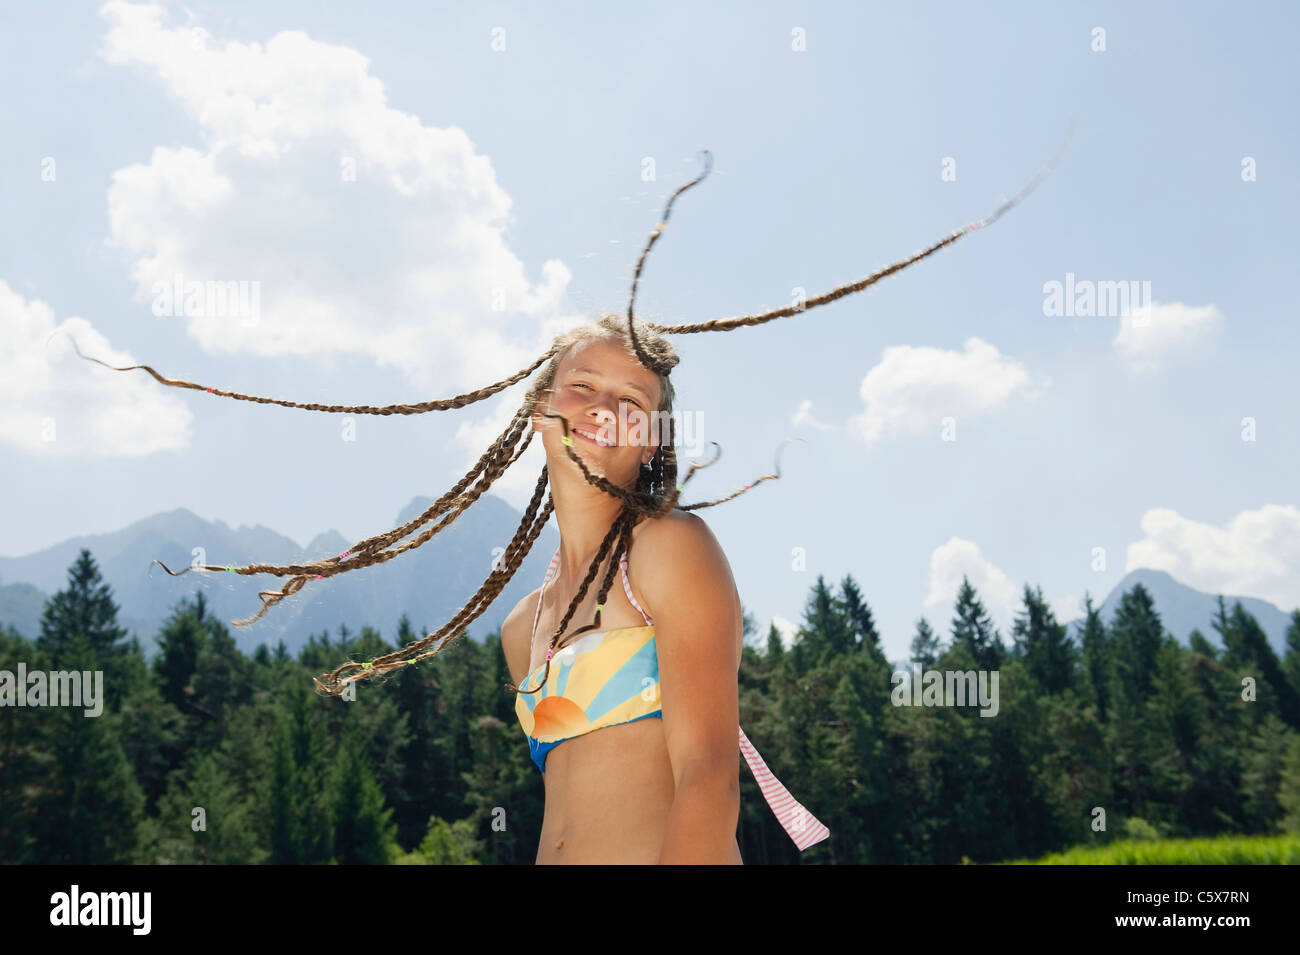 Germany, Girl (13-14) avec des dreadlocks, smiling, portrait Banque D'Images